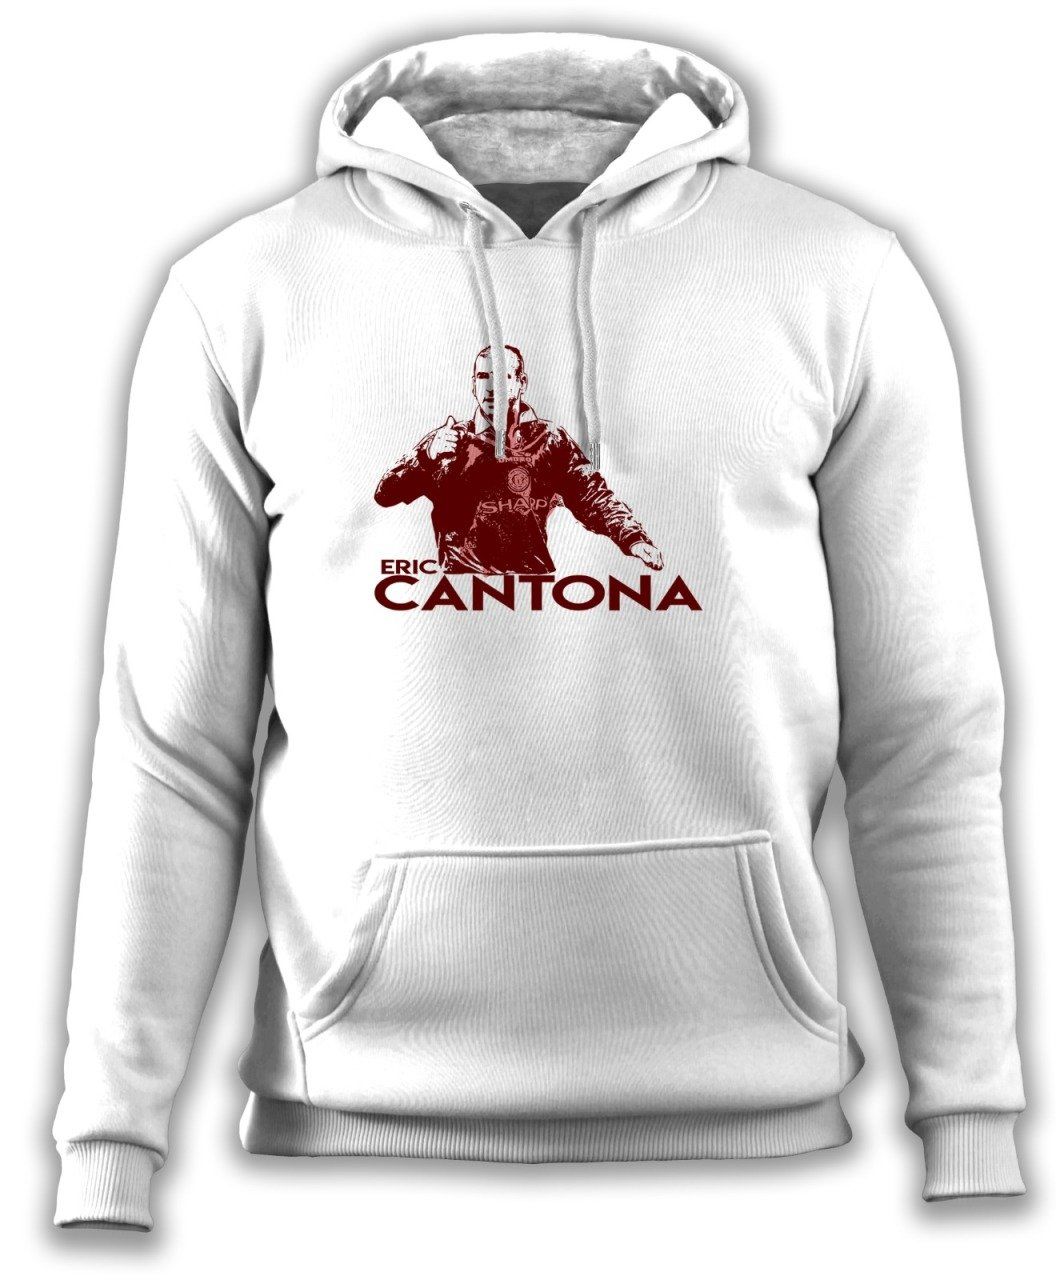 Cantona Sweatshirt